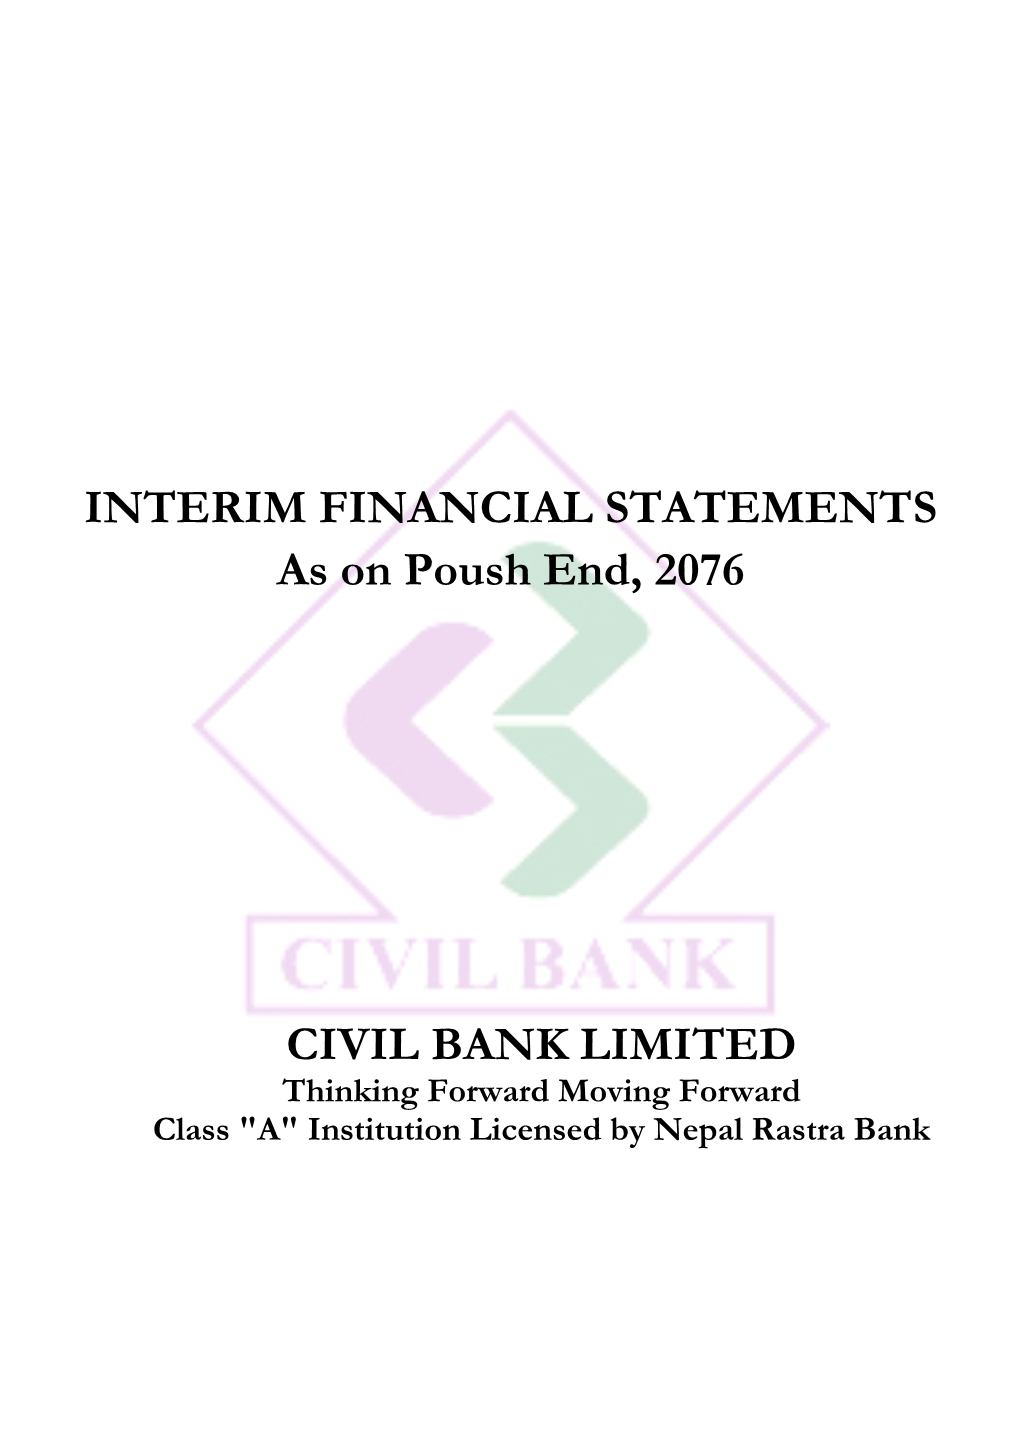 INTERIM FINANCIAL STATEMENTS As on Poush End, 2076 CIVIL